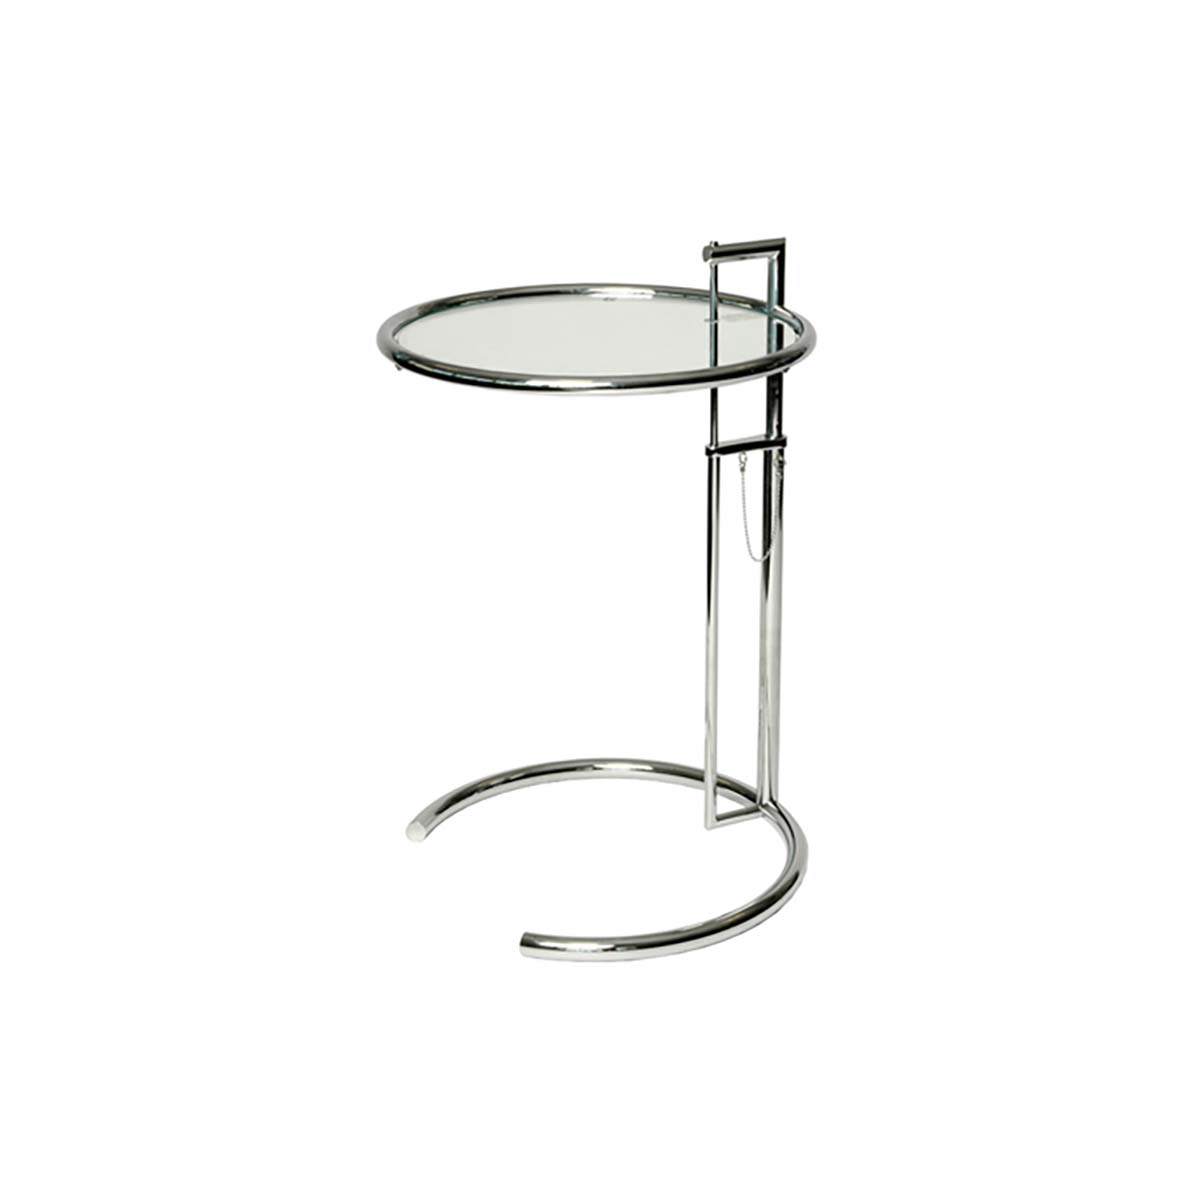 E1027 Pedestal Table